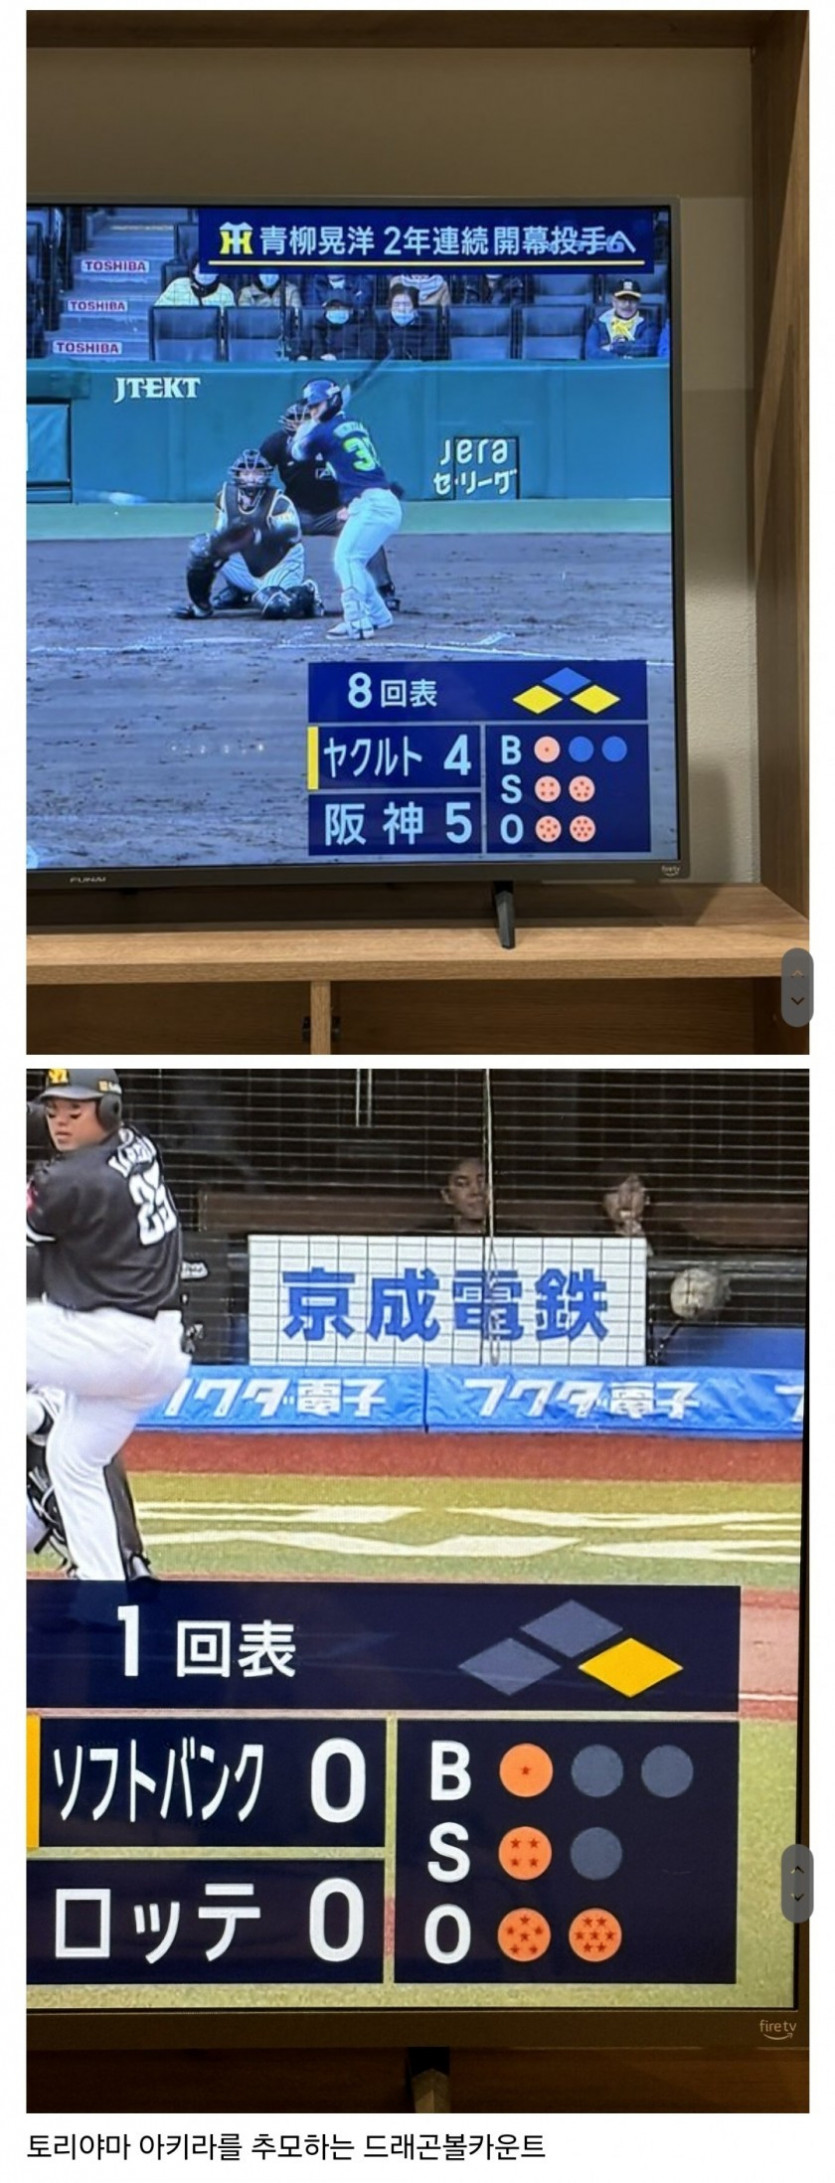 일본 야구 중계